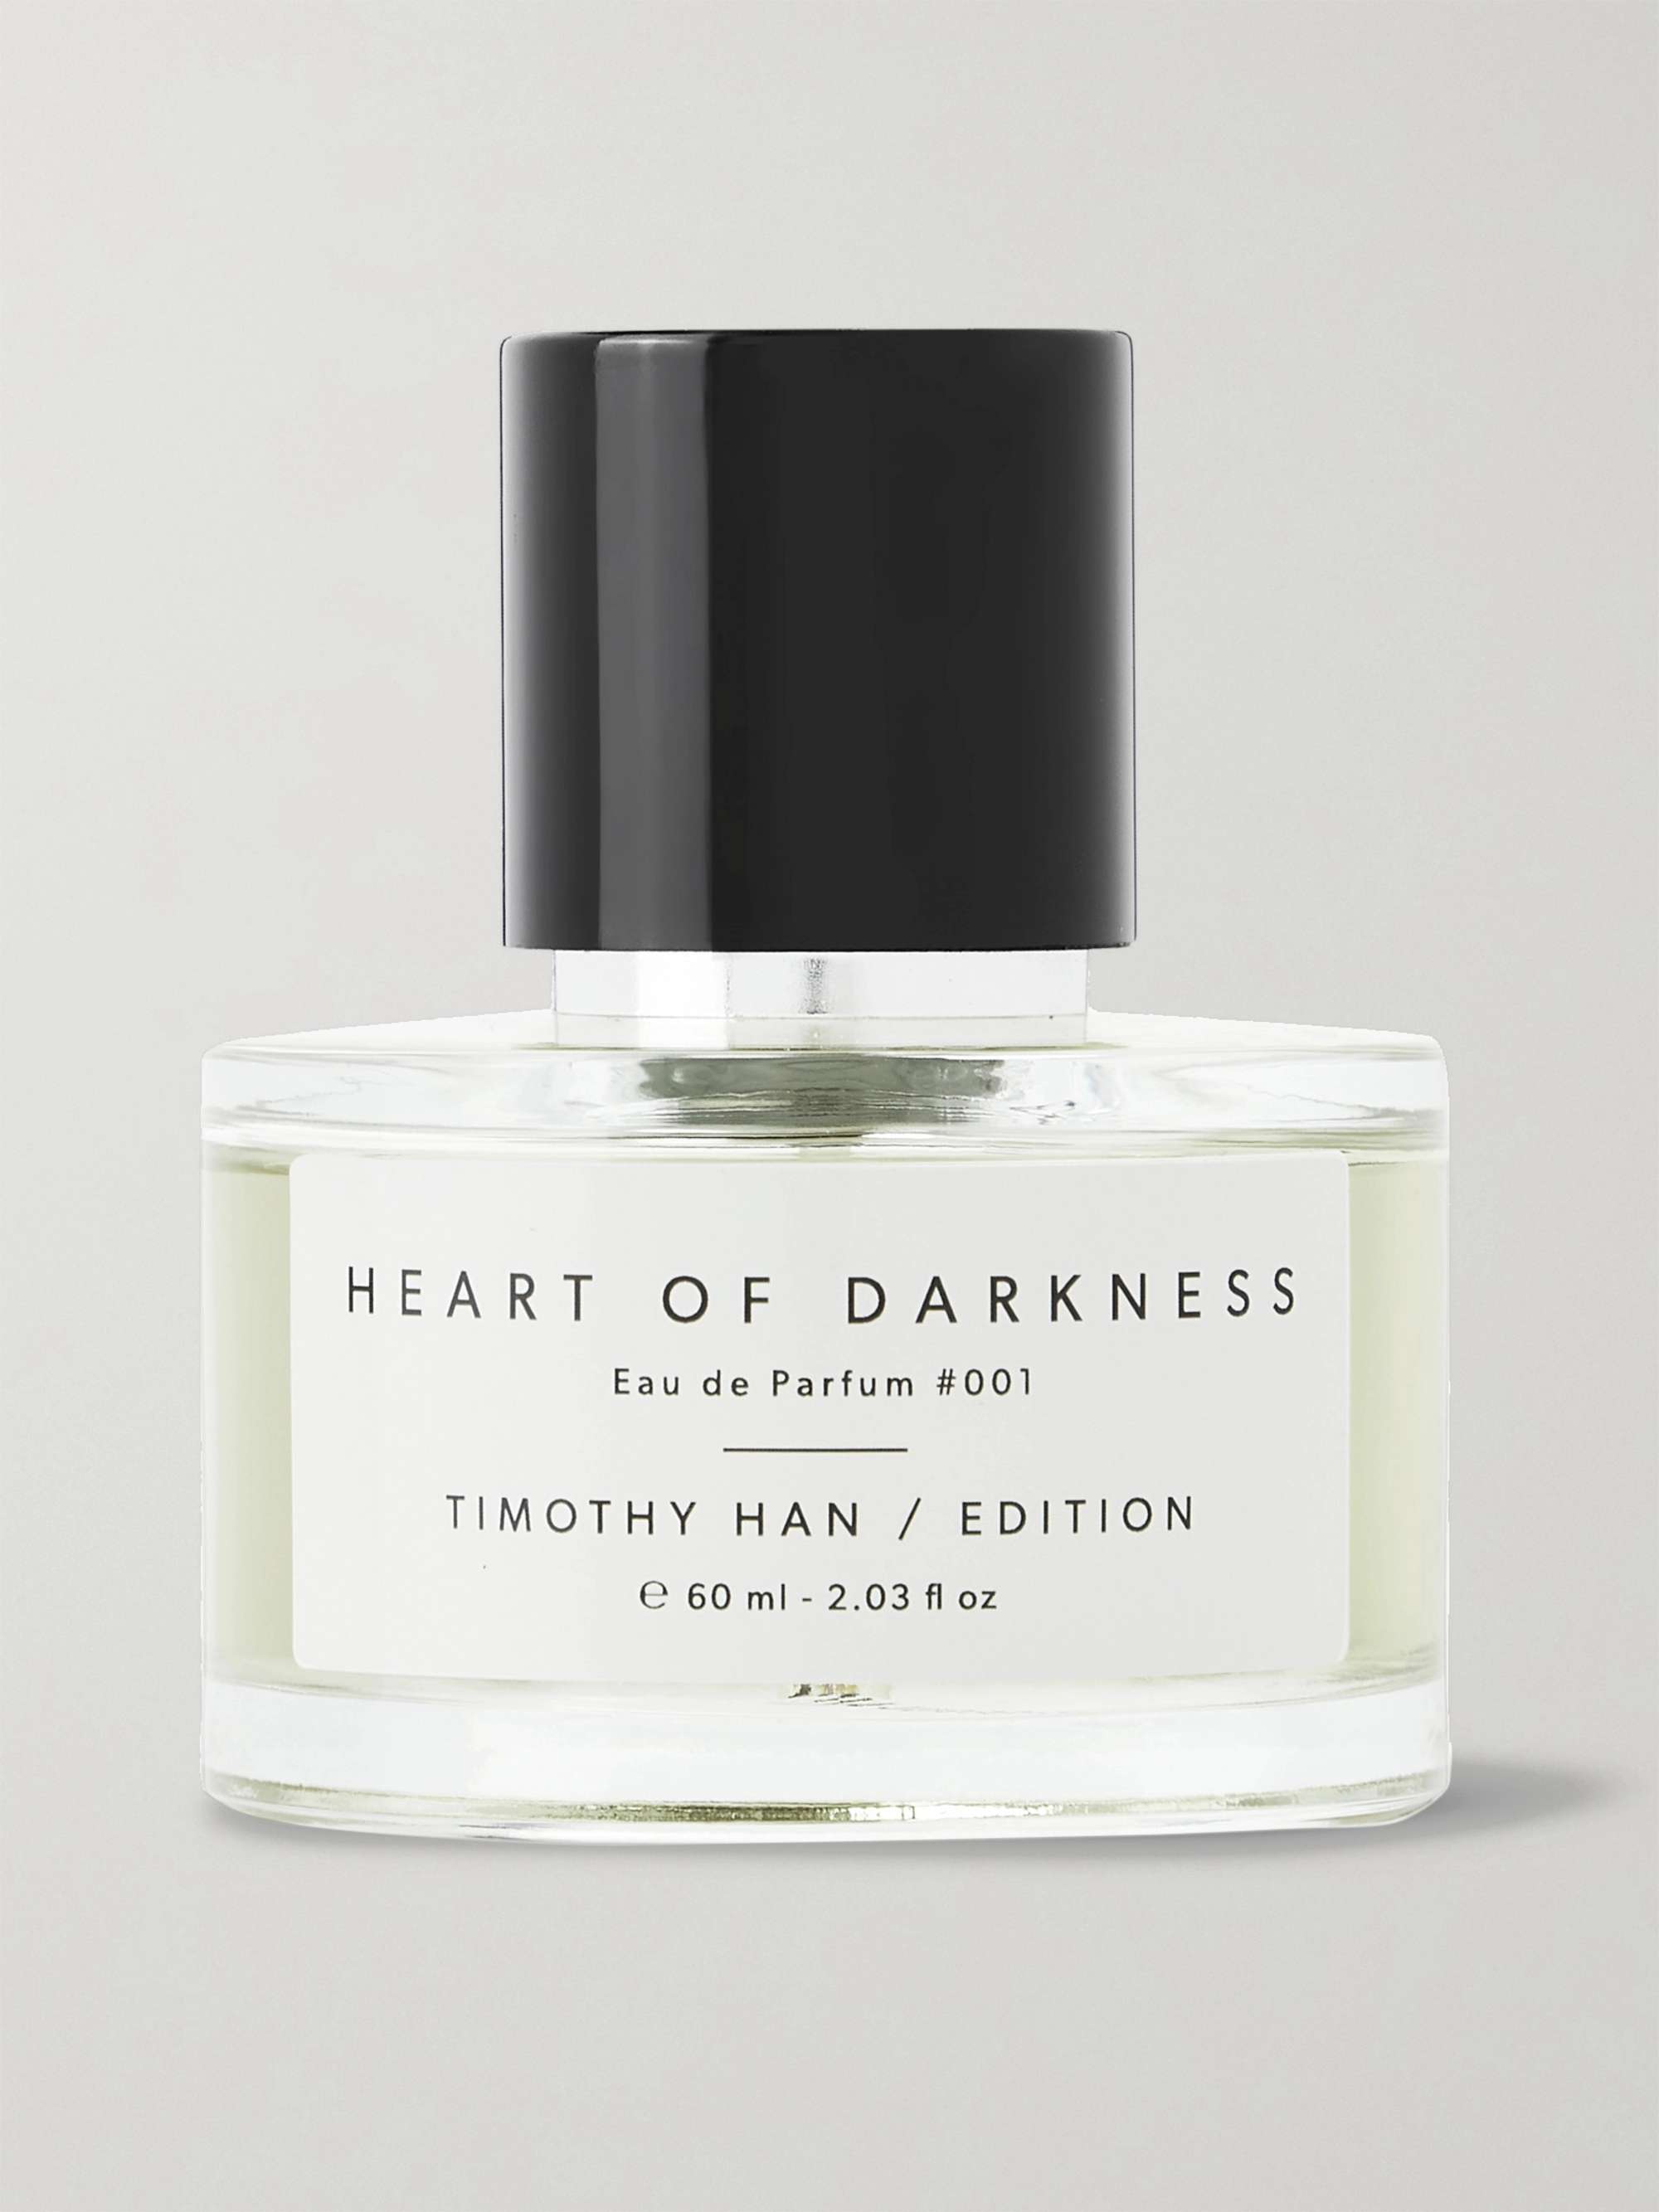 TIMOTHY HAN / EDITION Heart of Darkness Eau de Parfum, 60ml